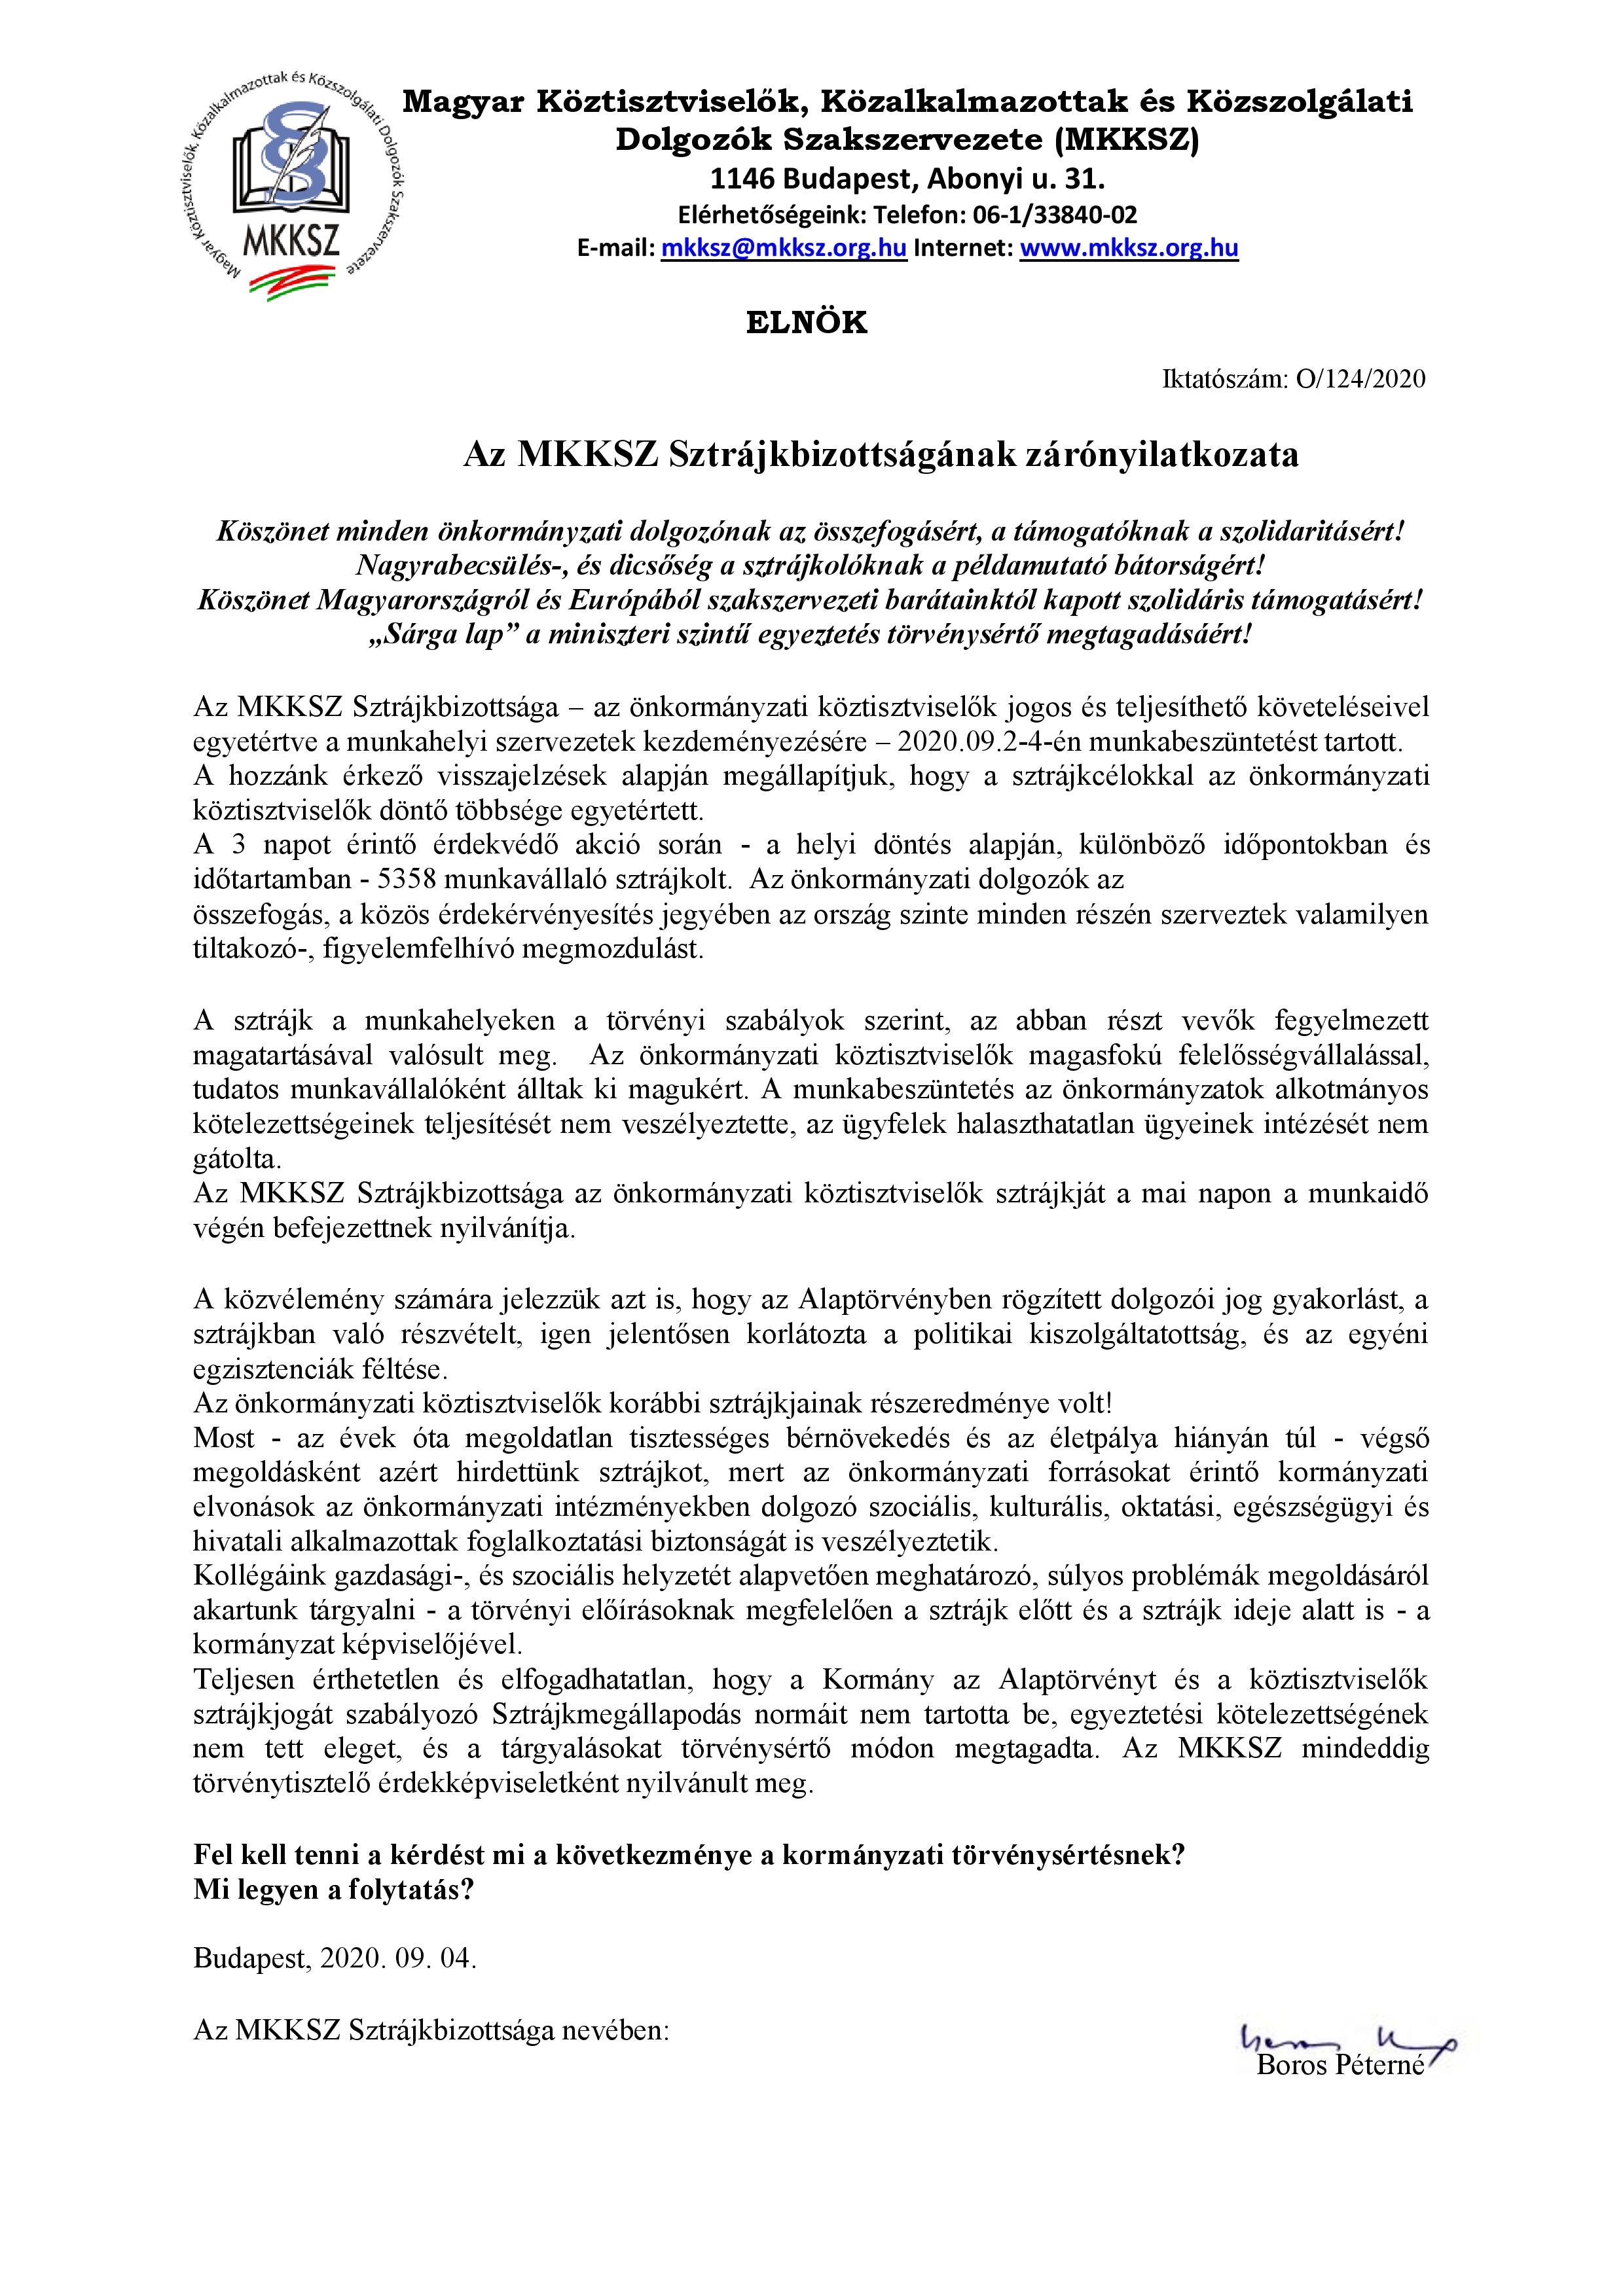 Magyar Köztisztviselők, Közalkalmazottak és Közszolgálati Dolgozók Szakszervezete támogatása